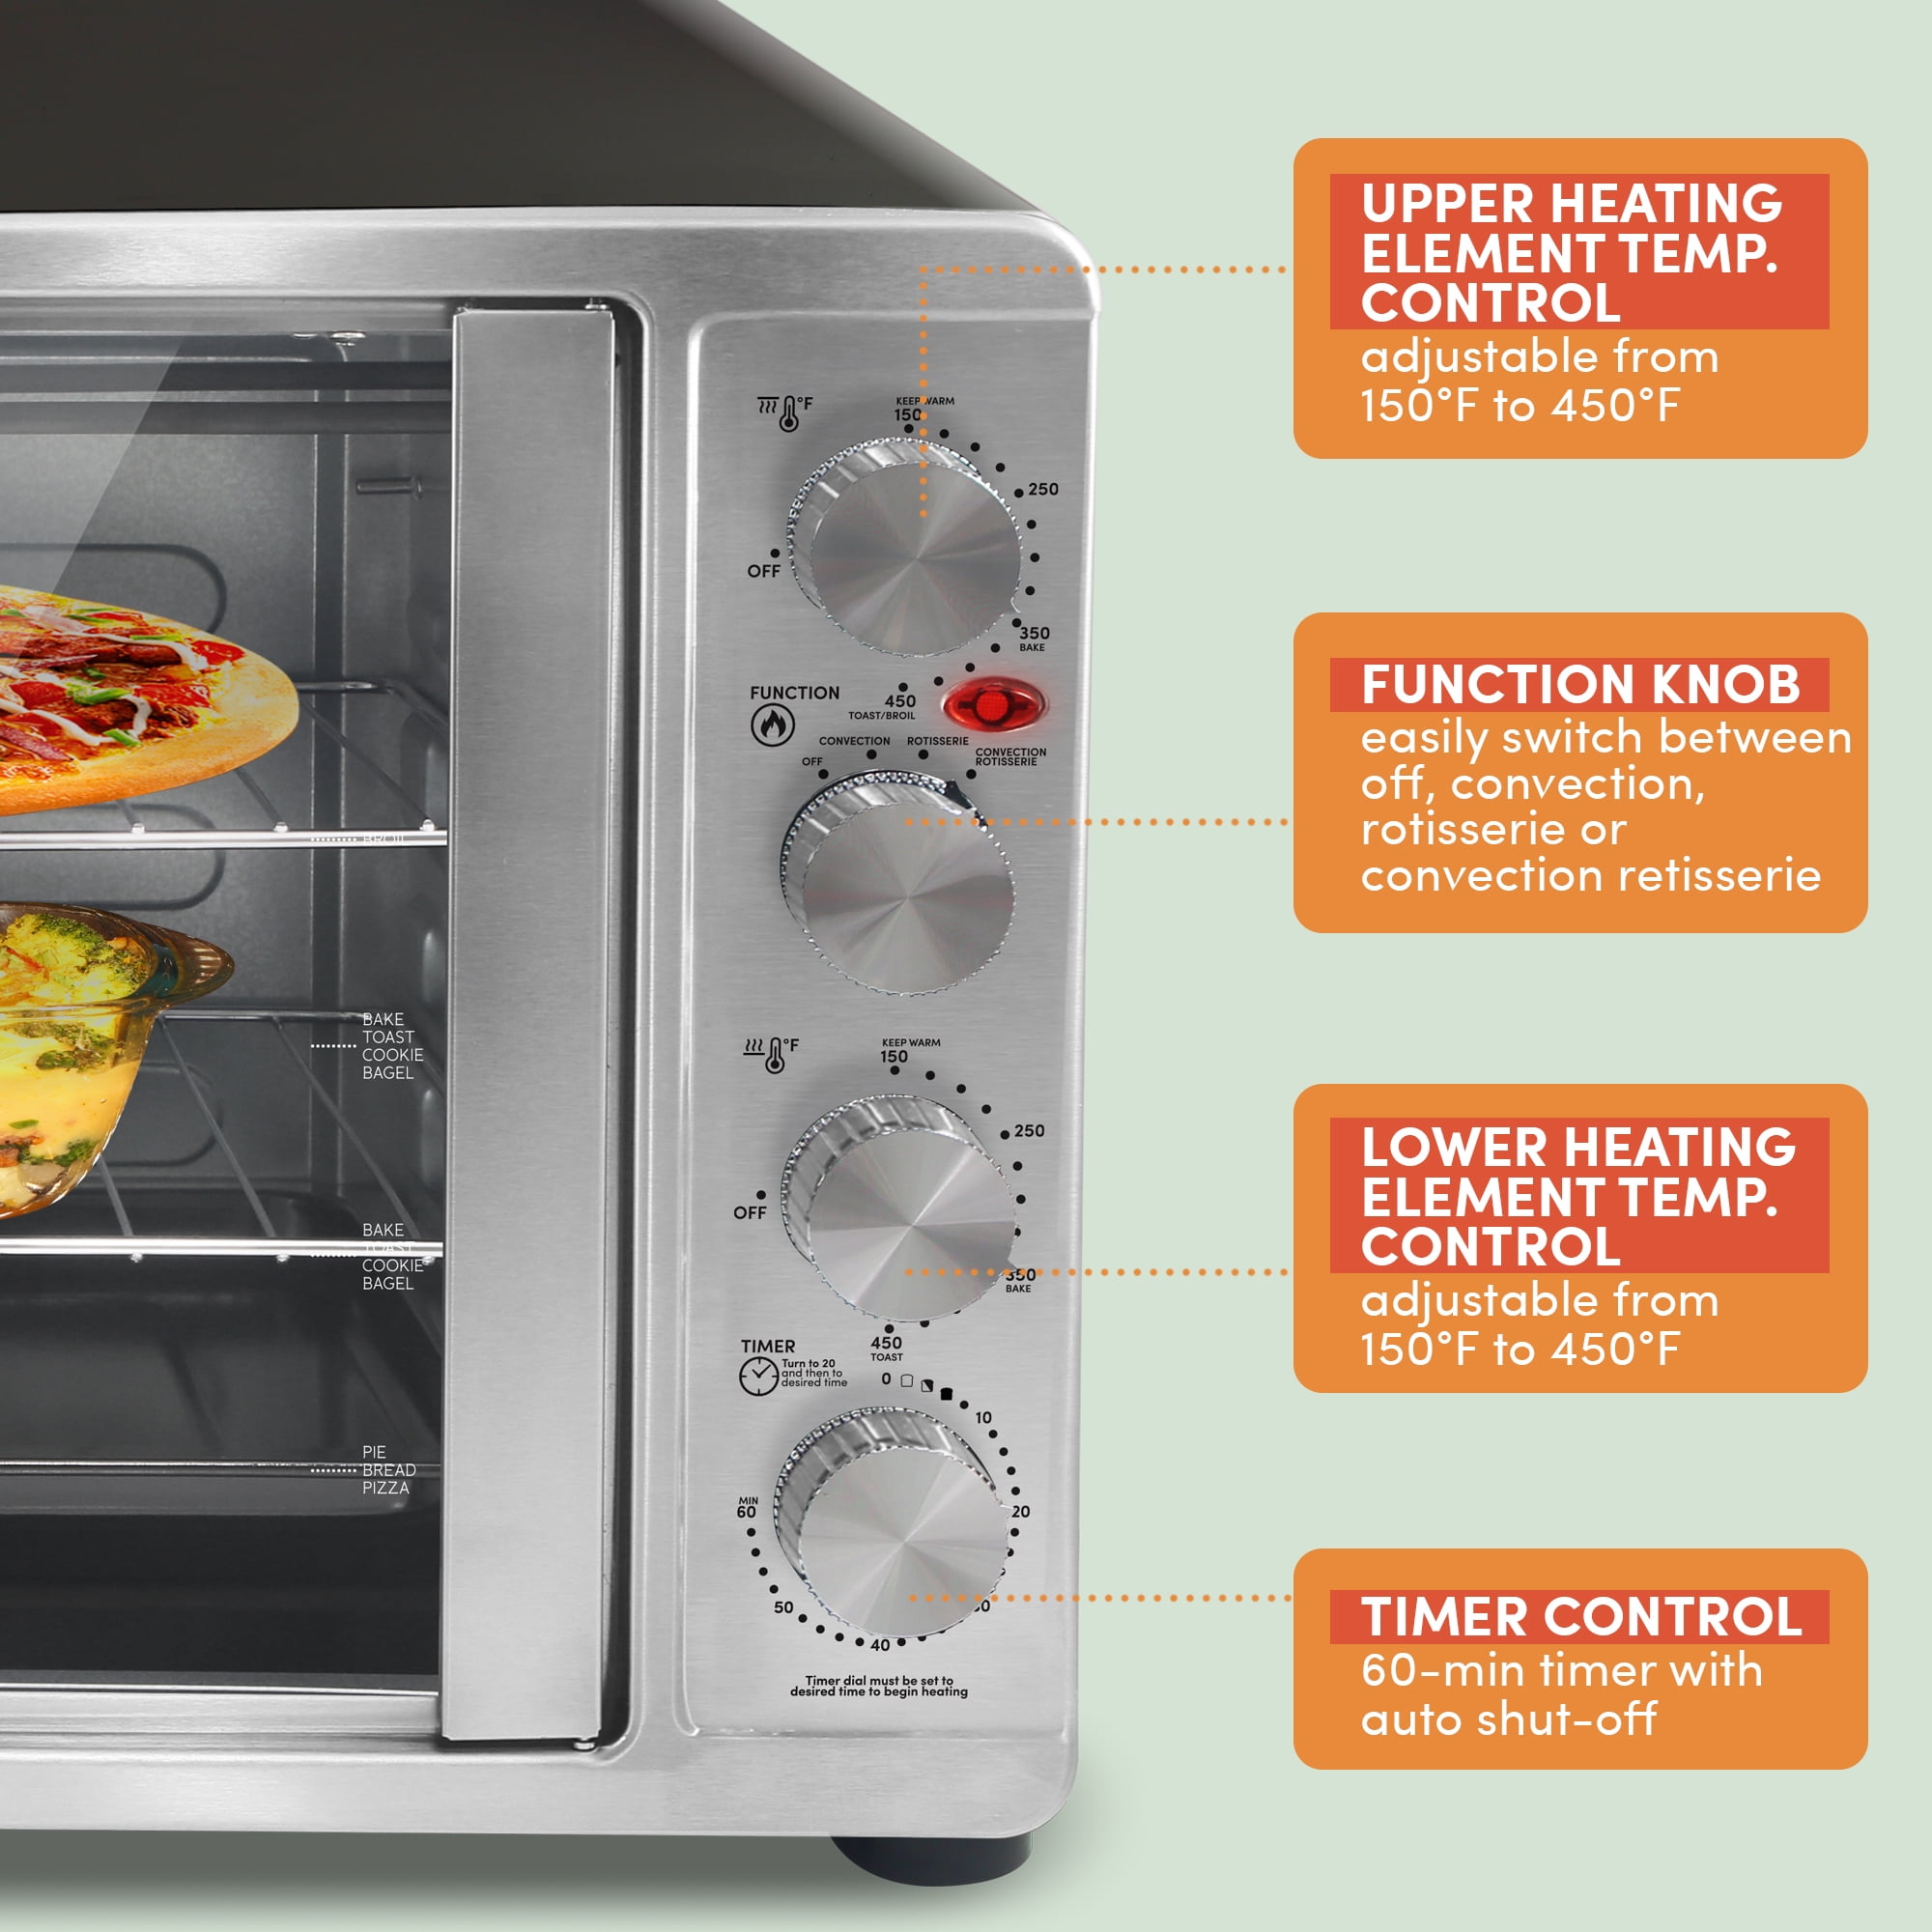 Best Buy: Elite Gourmet 2-Door Oven w Rotisserie & Convection